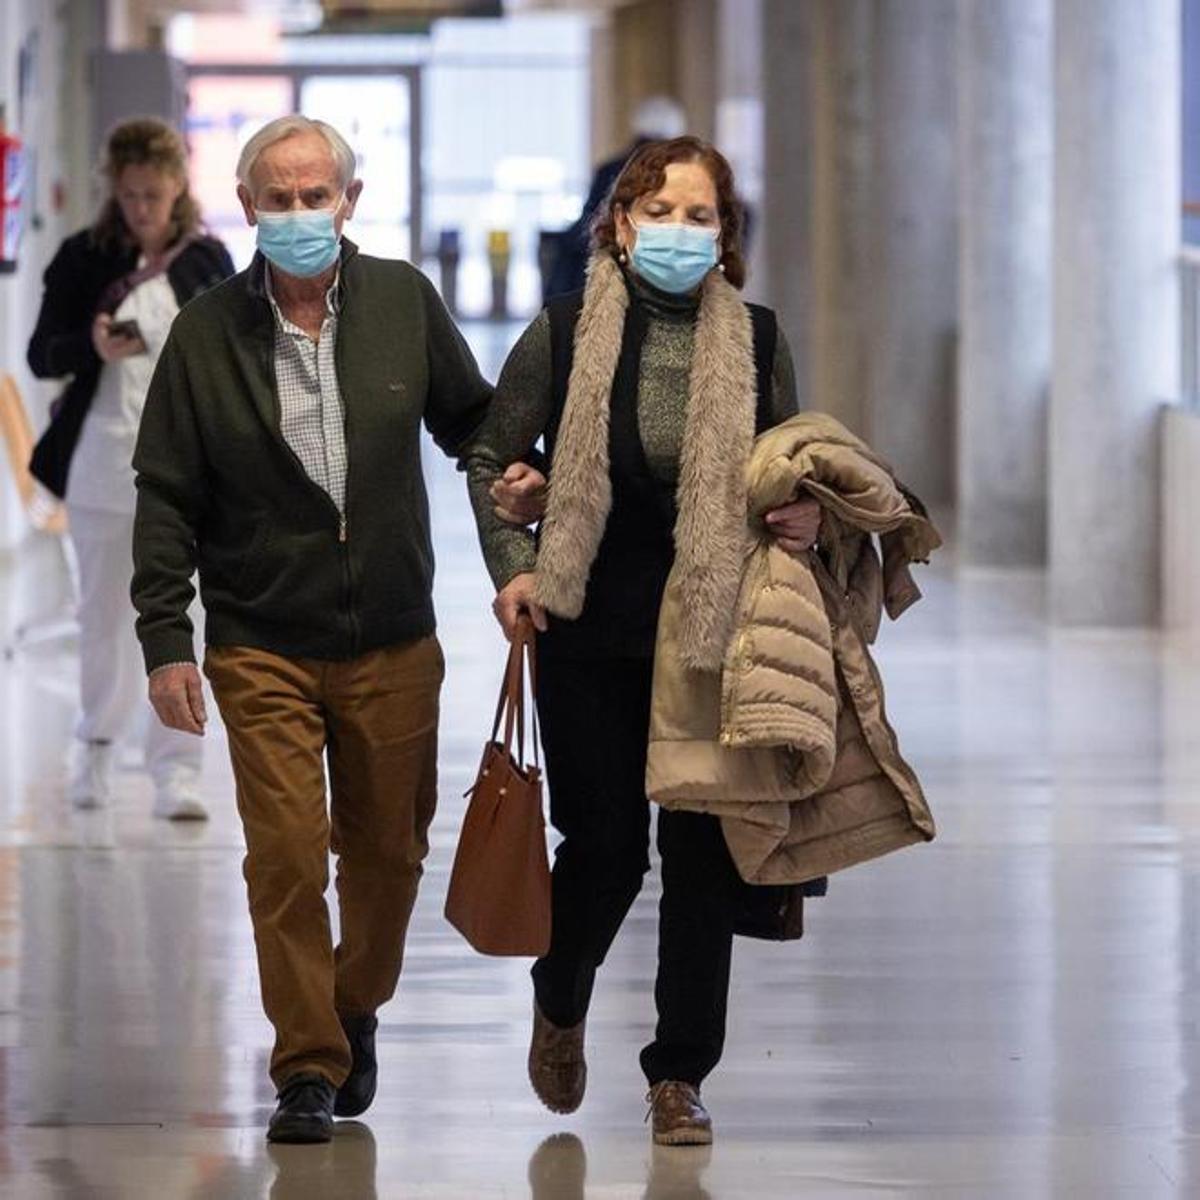 Las autoridades sanitarias recomiendan el uso de mascarillas para prevenir el contagio de las enfermedades respiratorias.